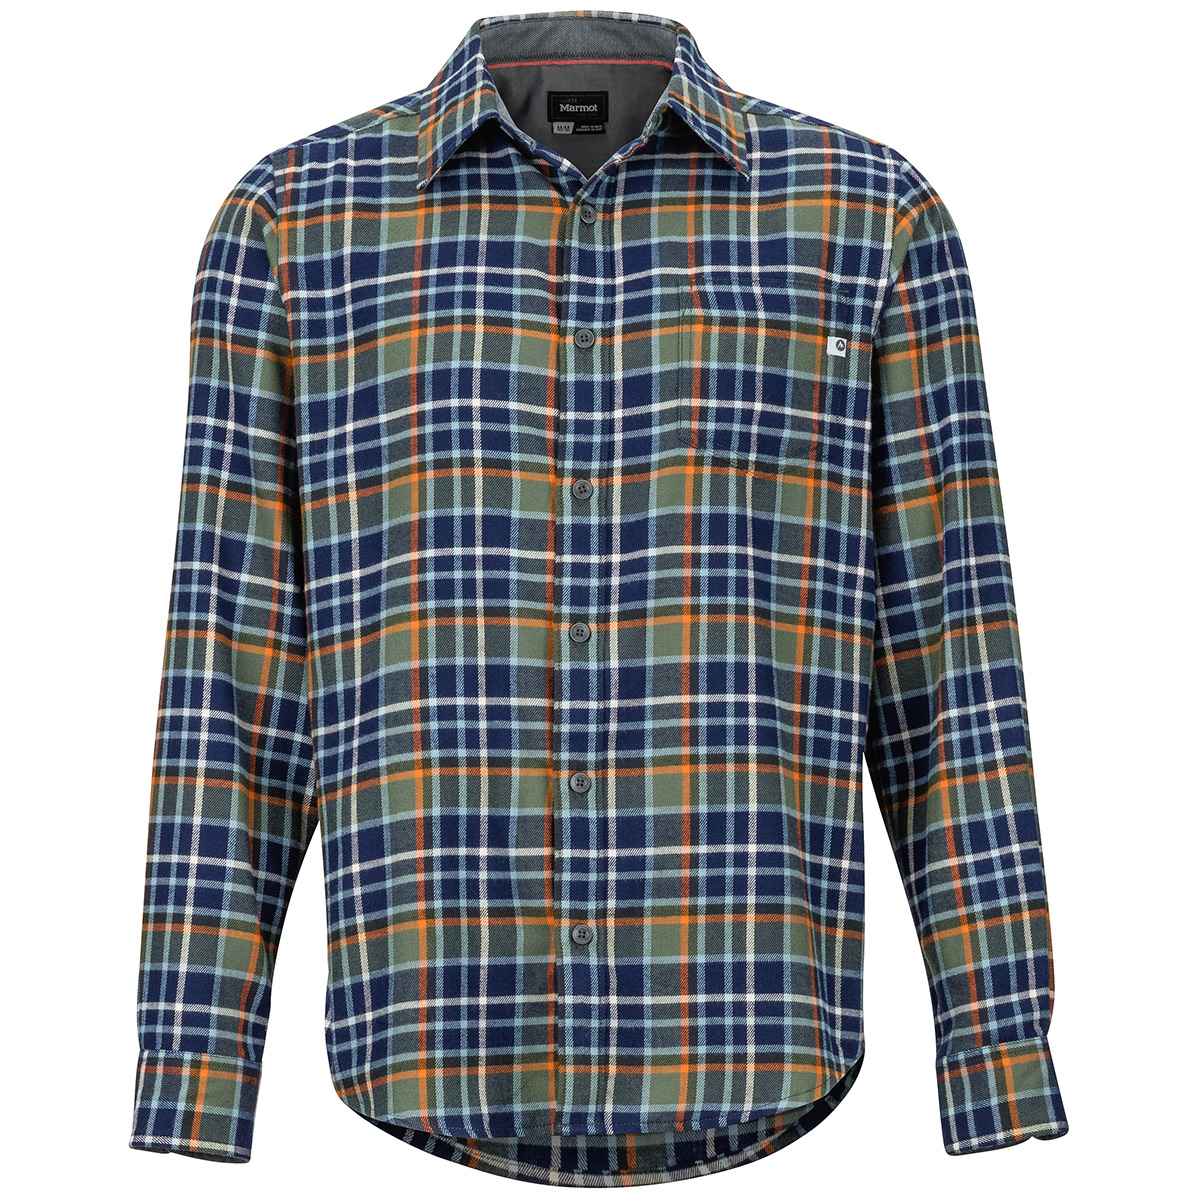 Marmot Men's Fairfax Flannel Long-Sleeve Shirt - Green, L